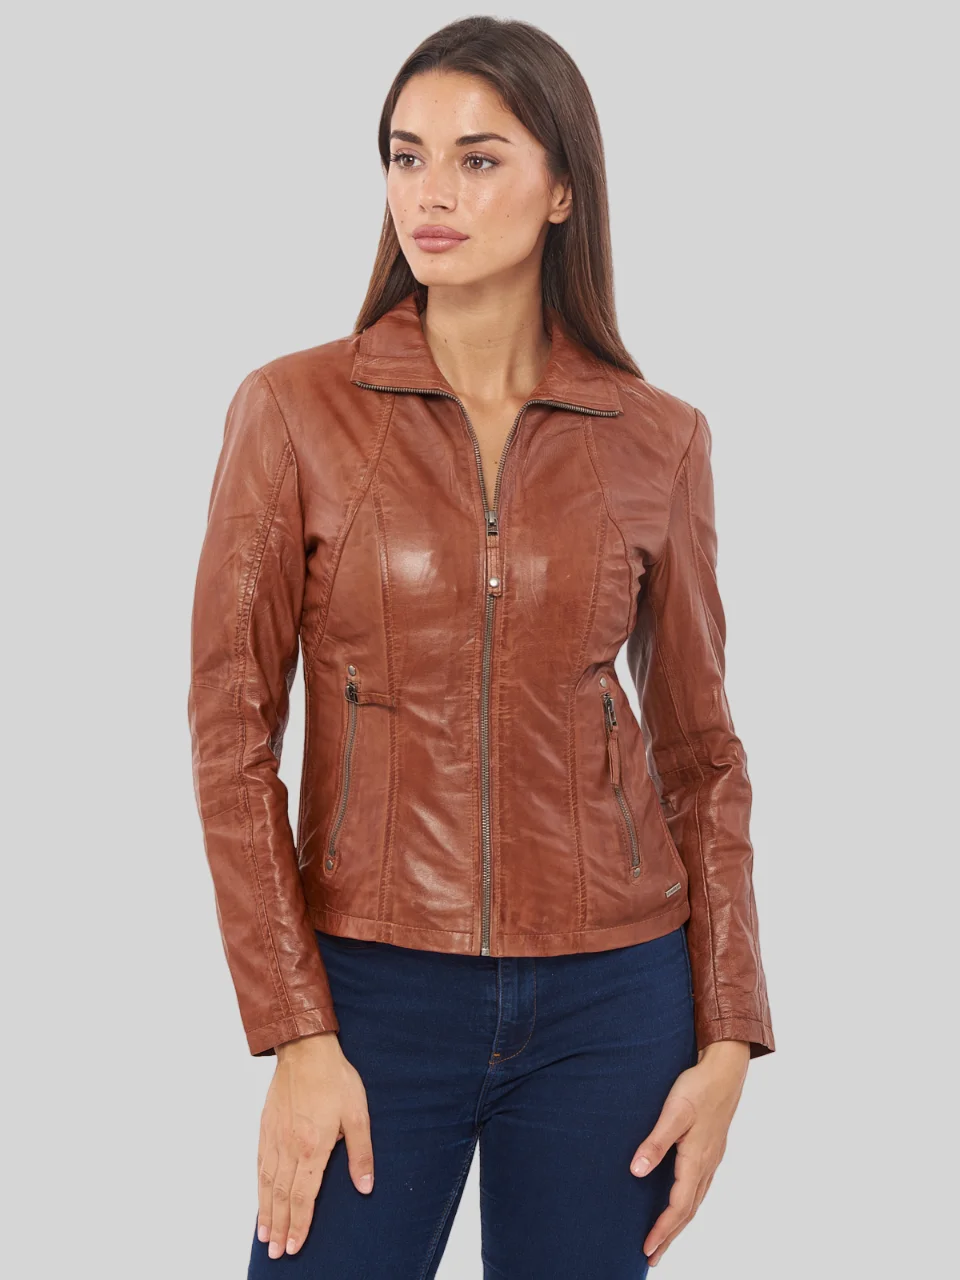 Women’s Tan Biker Leather Jacket: Inglewood